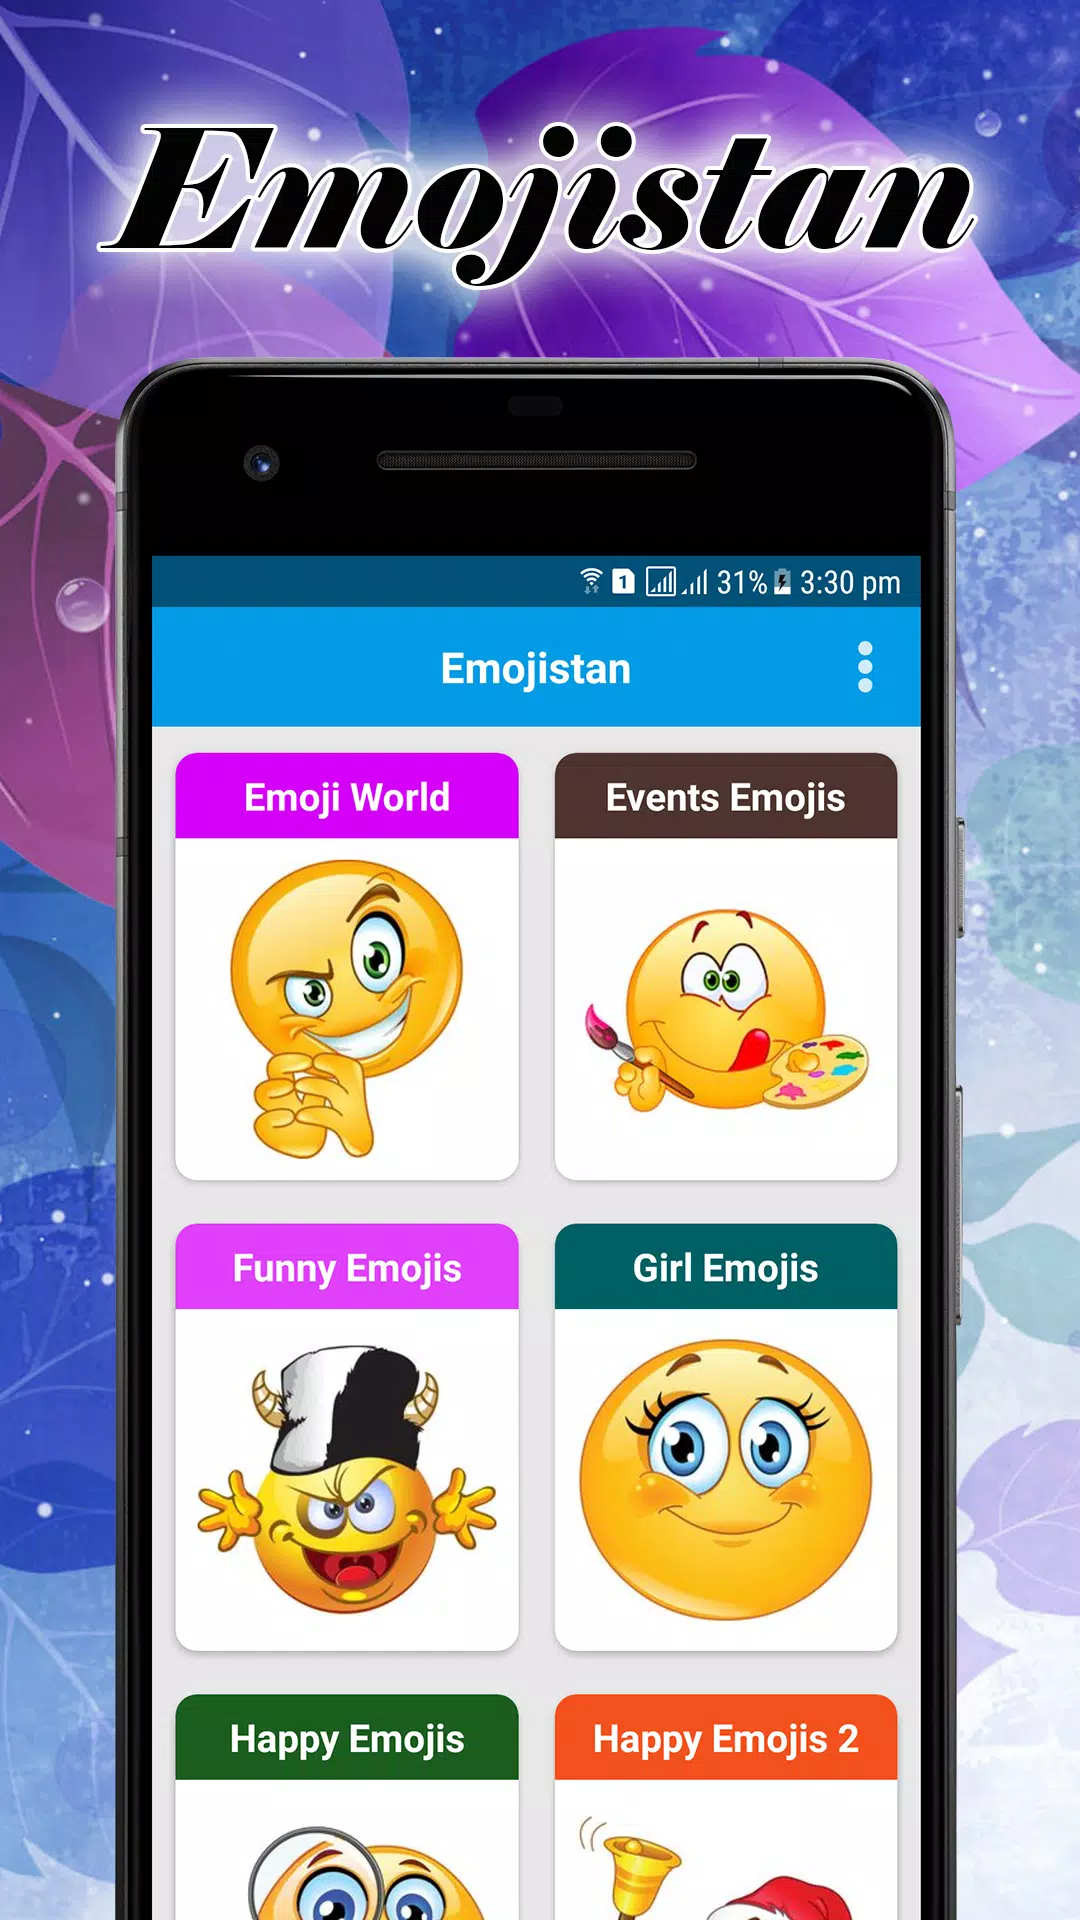 Free erotic emojis